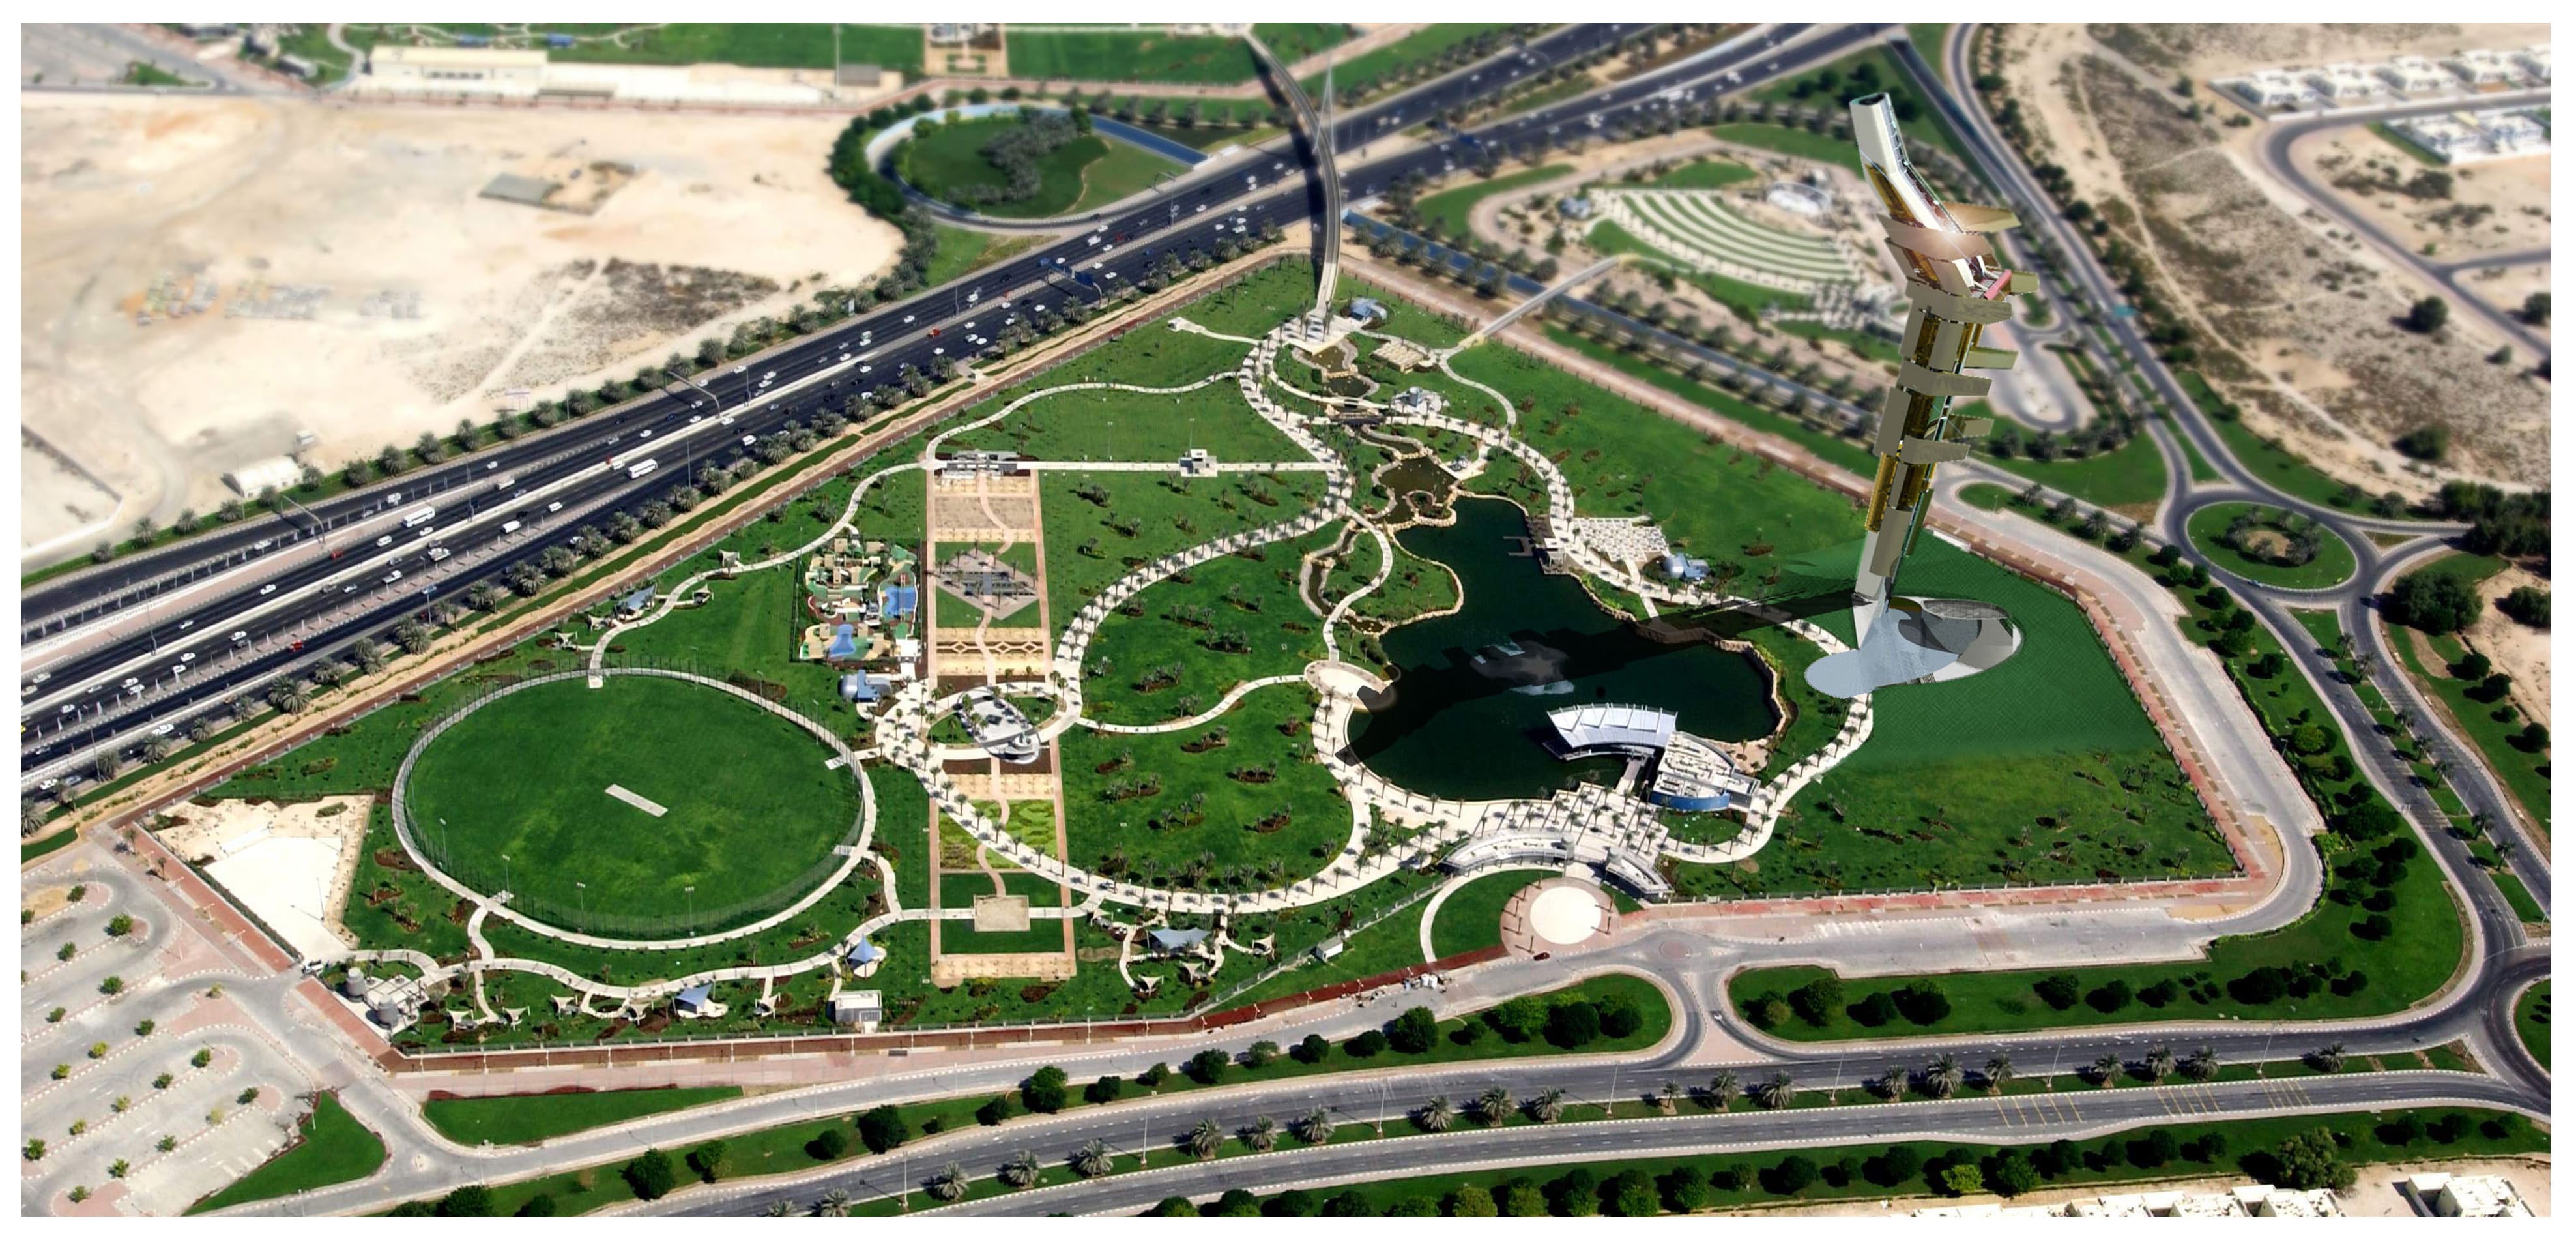 حديقة زعبيل في دبي